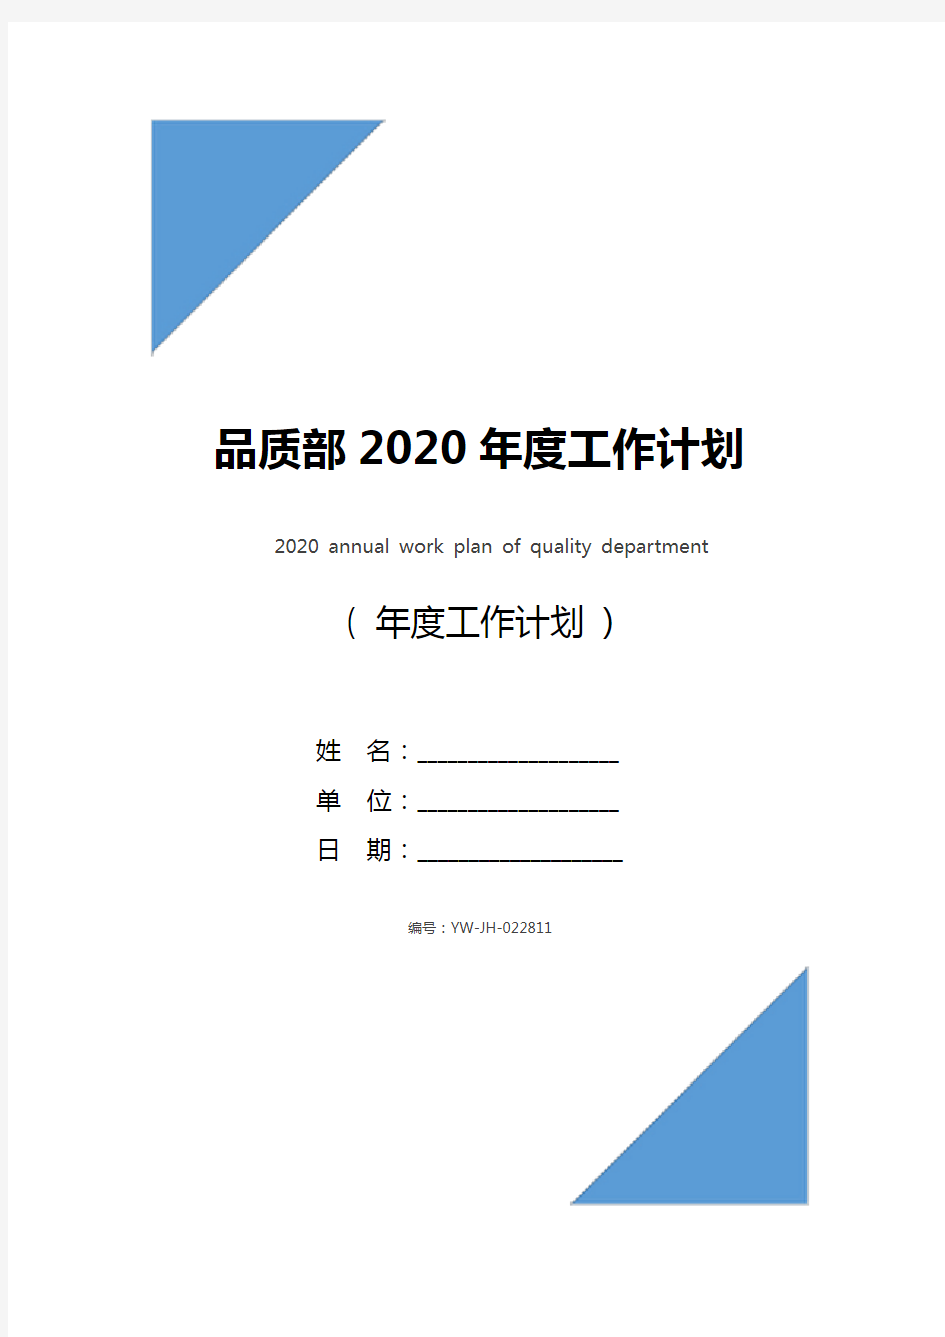 品质部2020年度工作计划